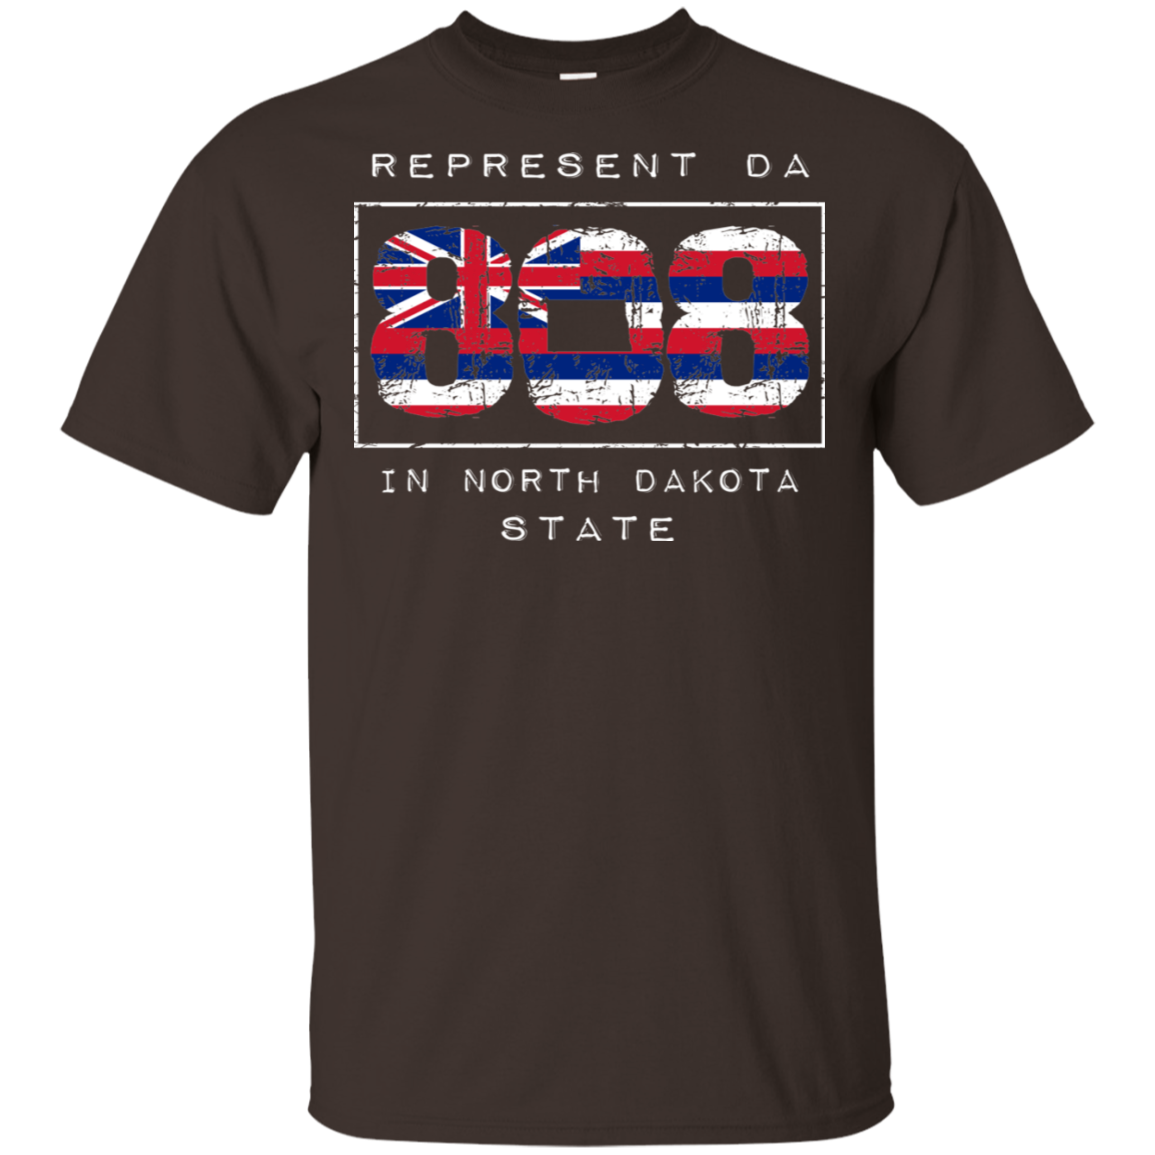 Rep Da 808 In North Dakota State Ultra Cotton T-Shirt, T-Shirts, Hawaii Nei All Day